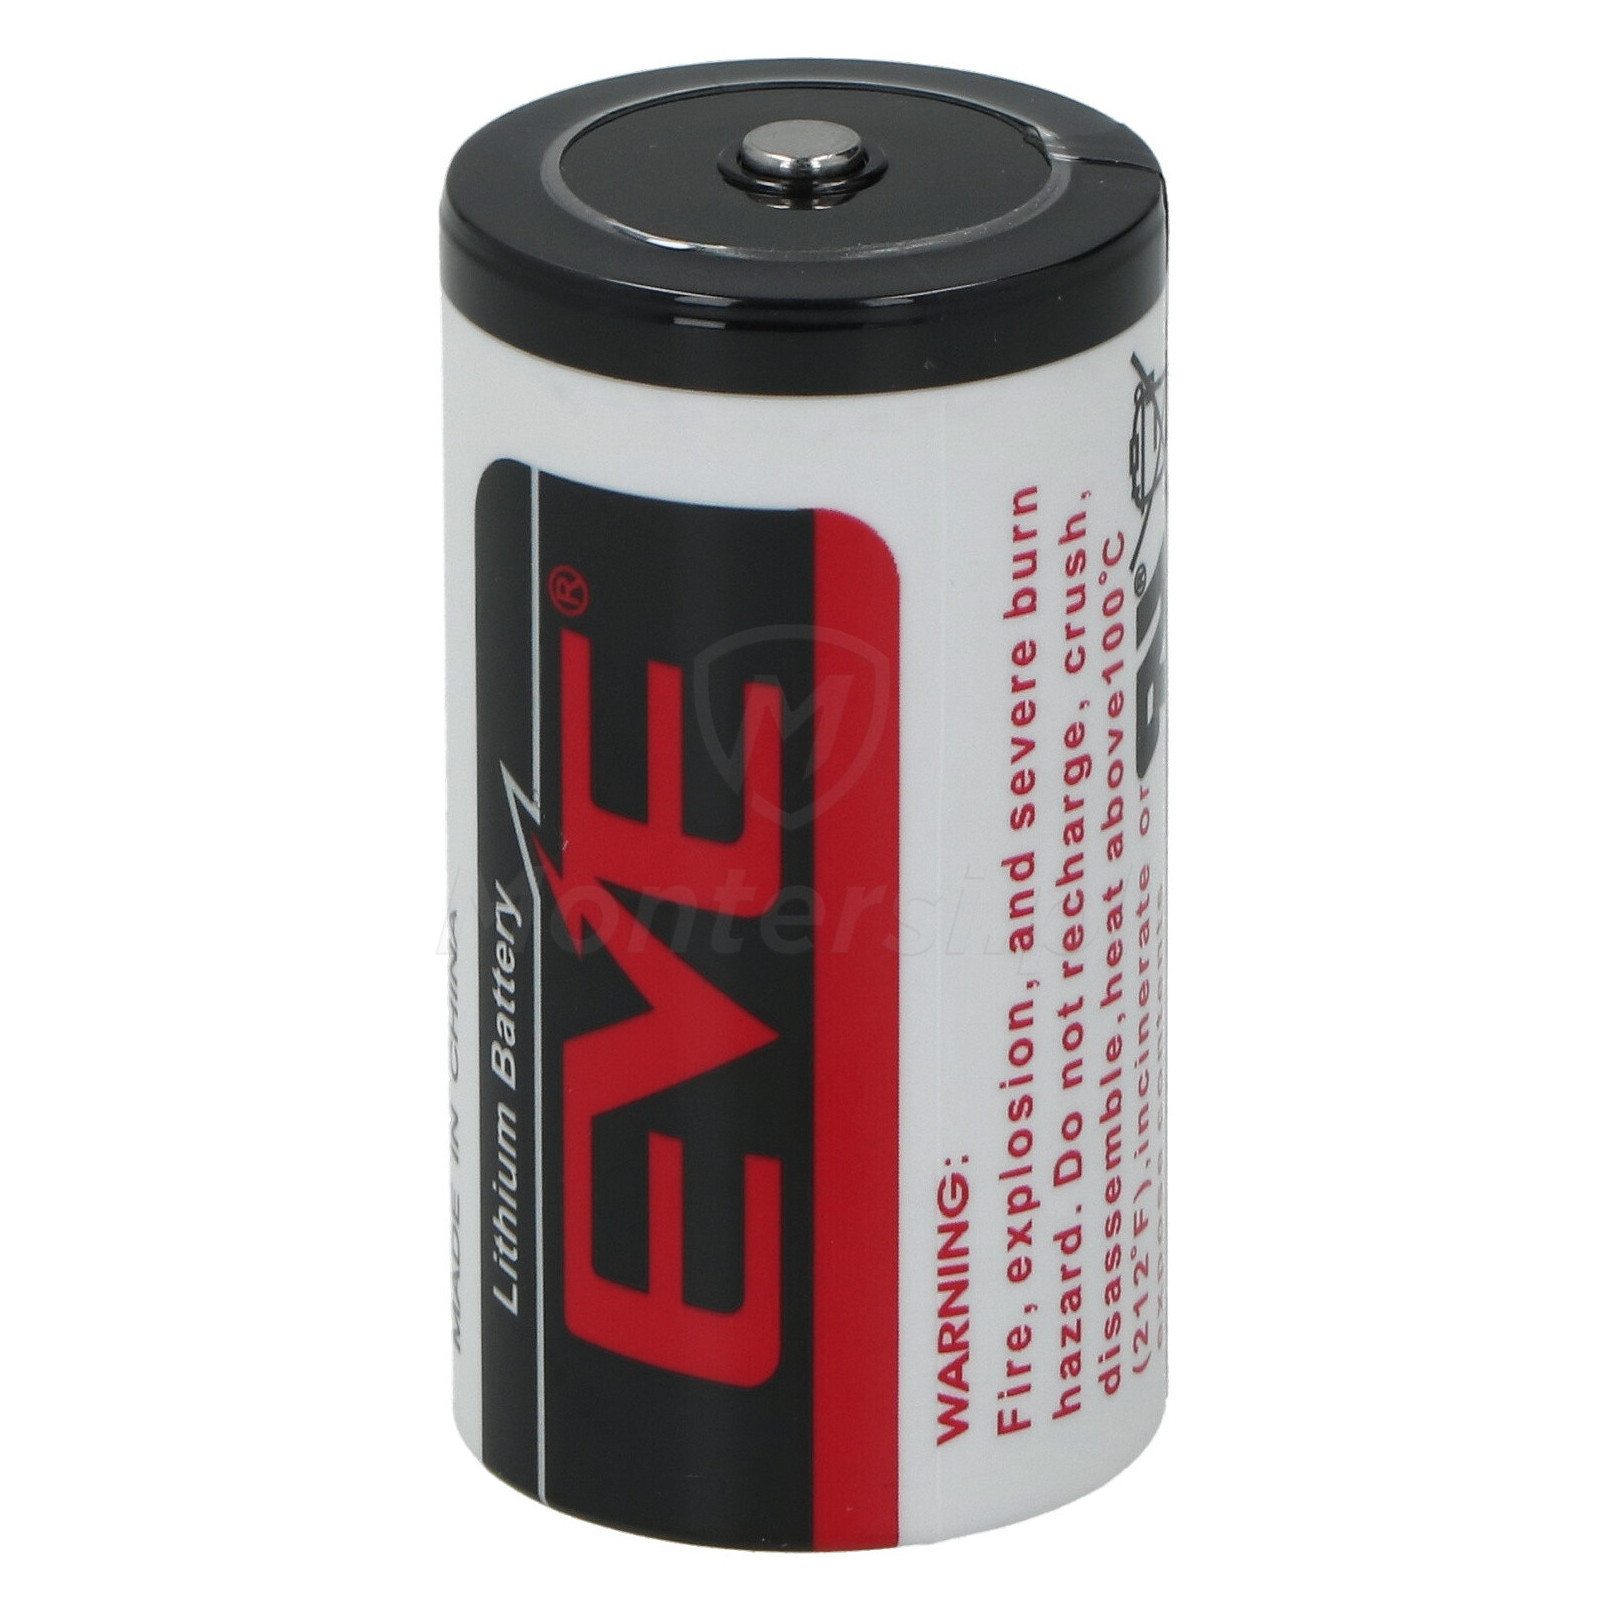 EVE ER26500  - Bateria 3.6V 8.5 Ah